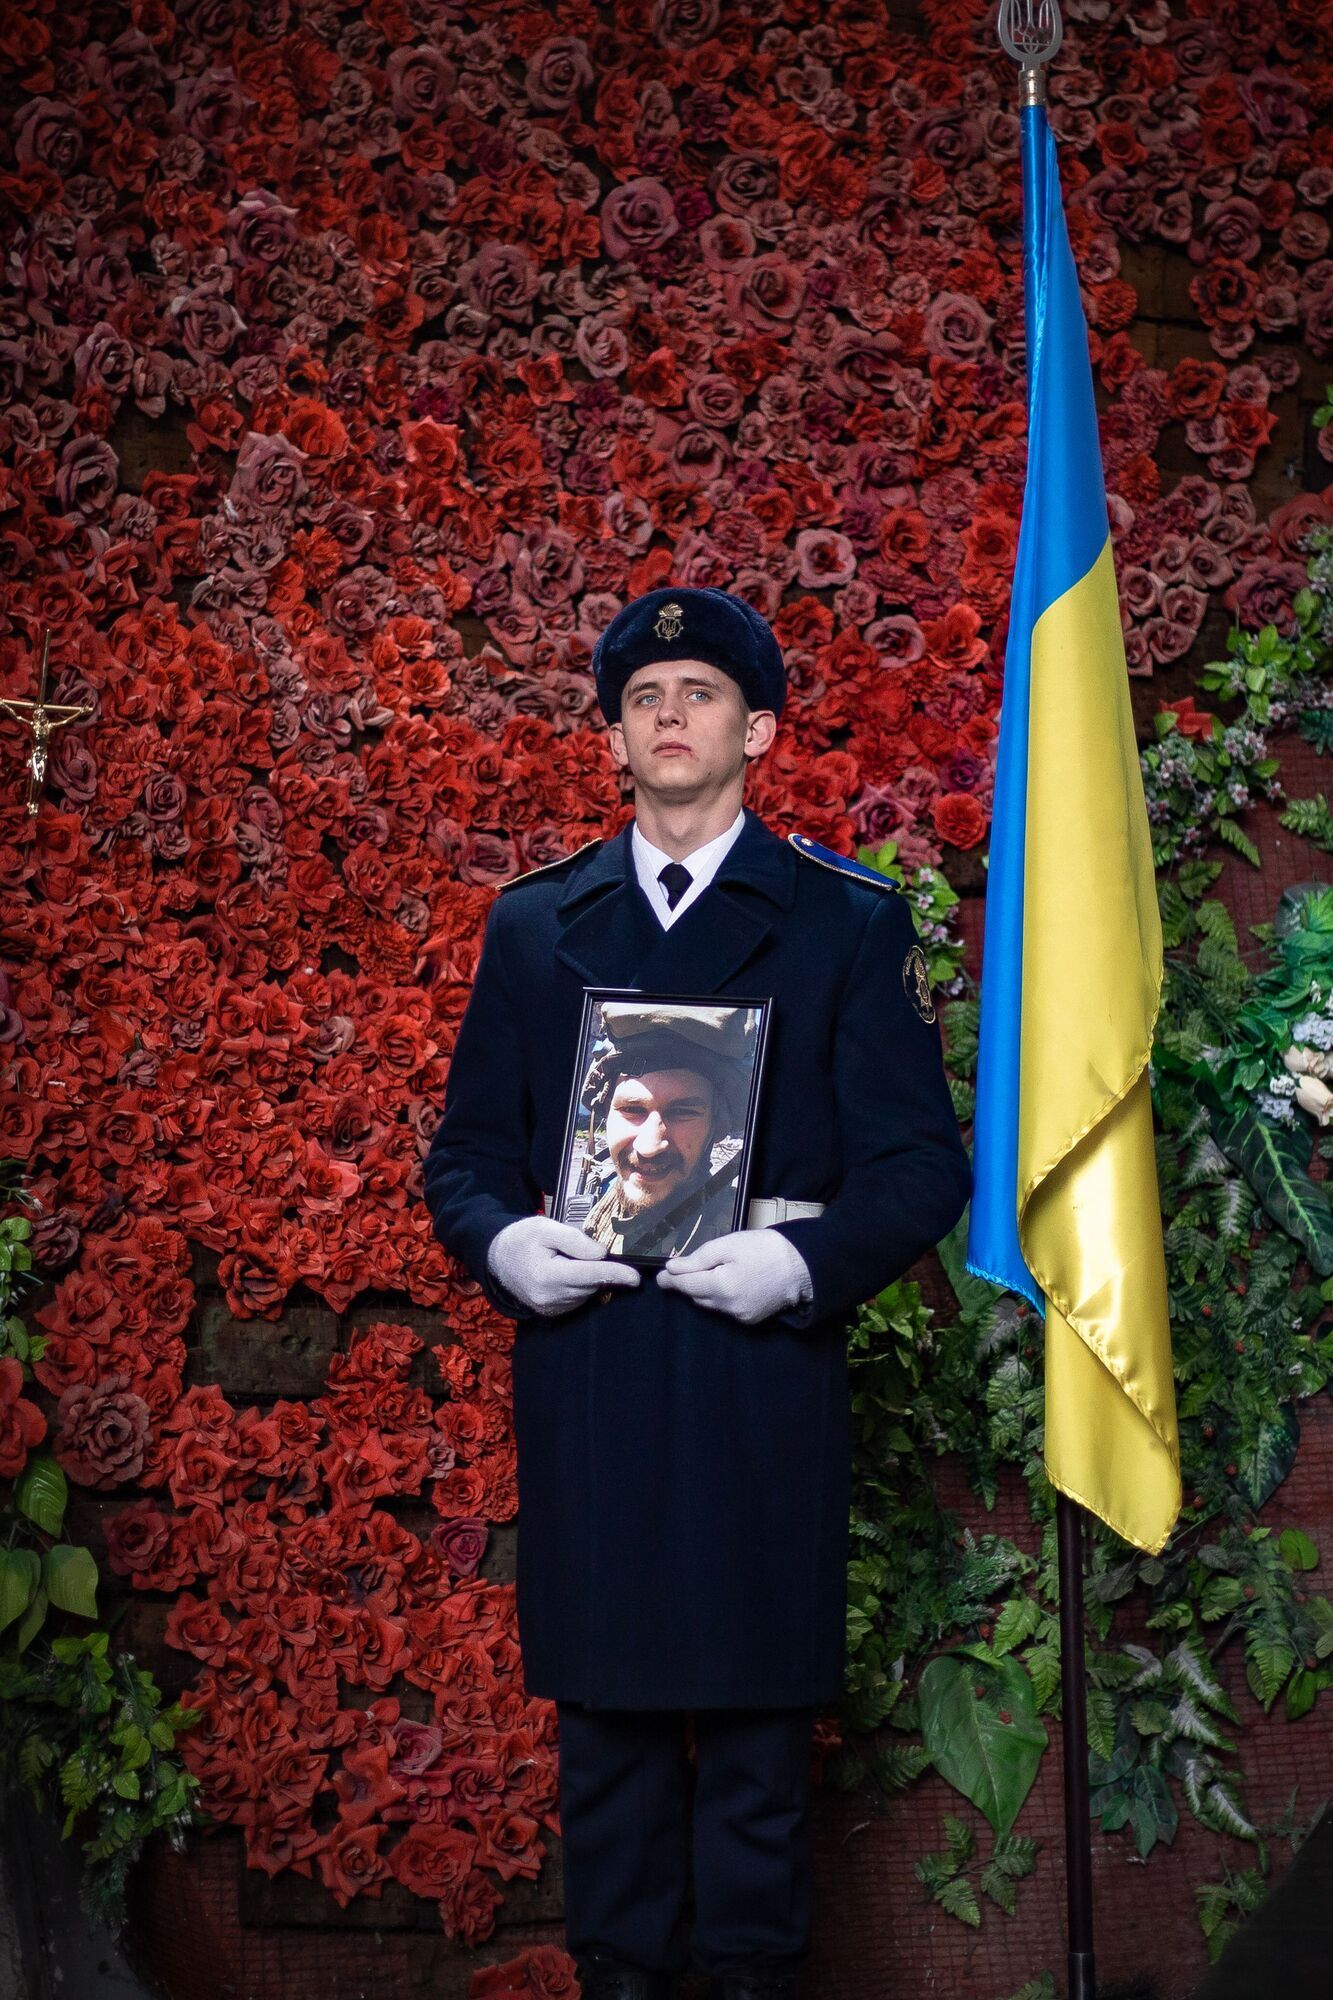 У Києві попрощалися із захисником Маріуполя із позивним ’’Лев’’, якого окупанти вбили у Оленівці. Фото і відео